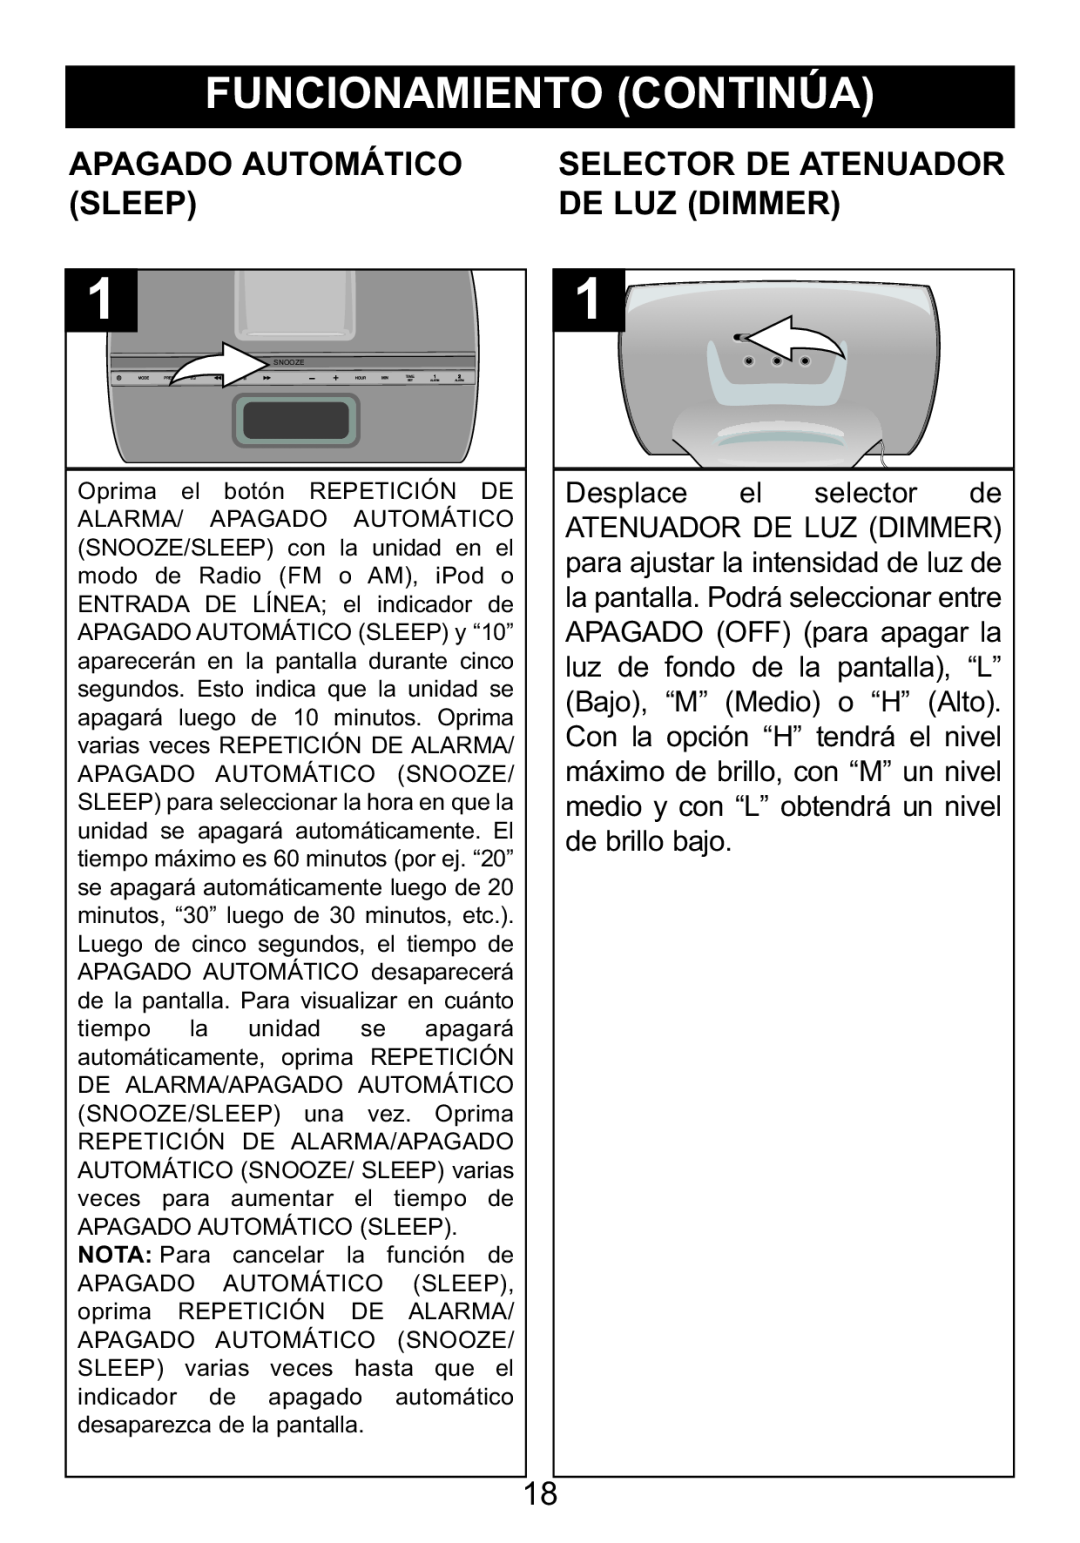 Memorex Mi4014 manual Apagado Automático, Selector De Atenuador, Sleep, De Luz Dimmer, Desplace el selector de 